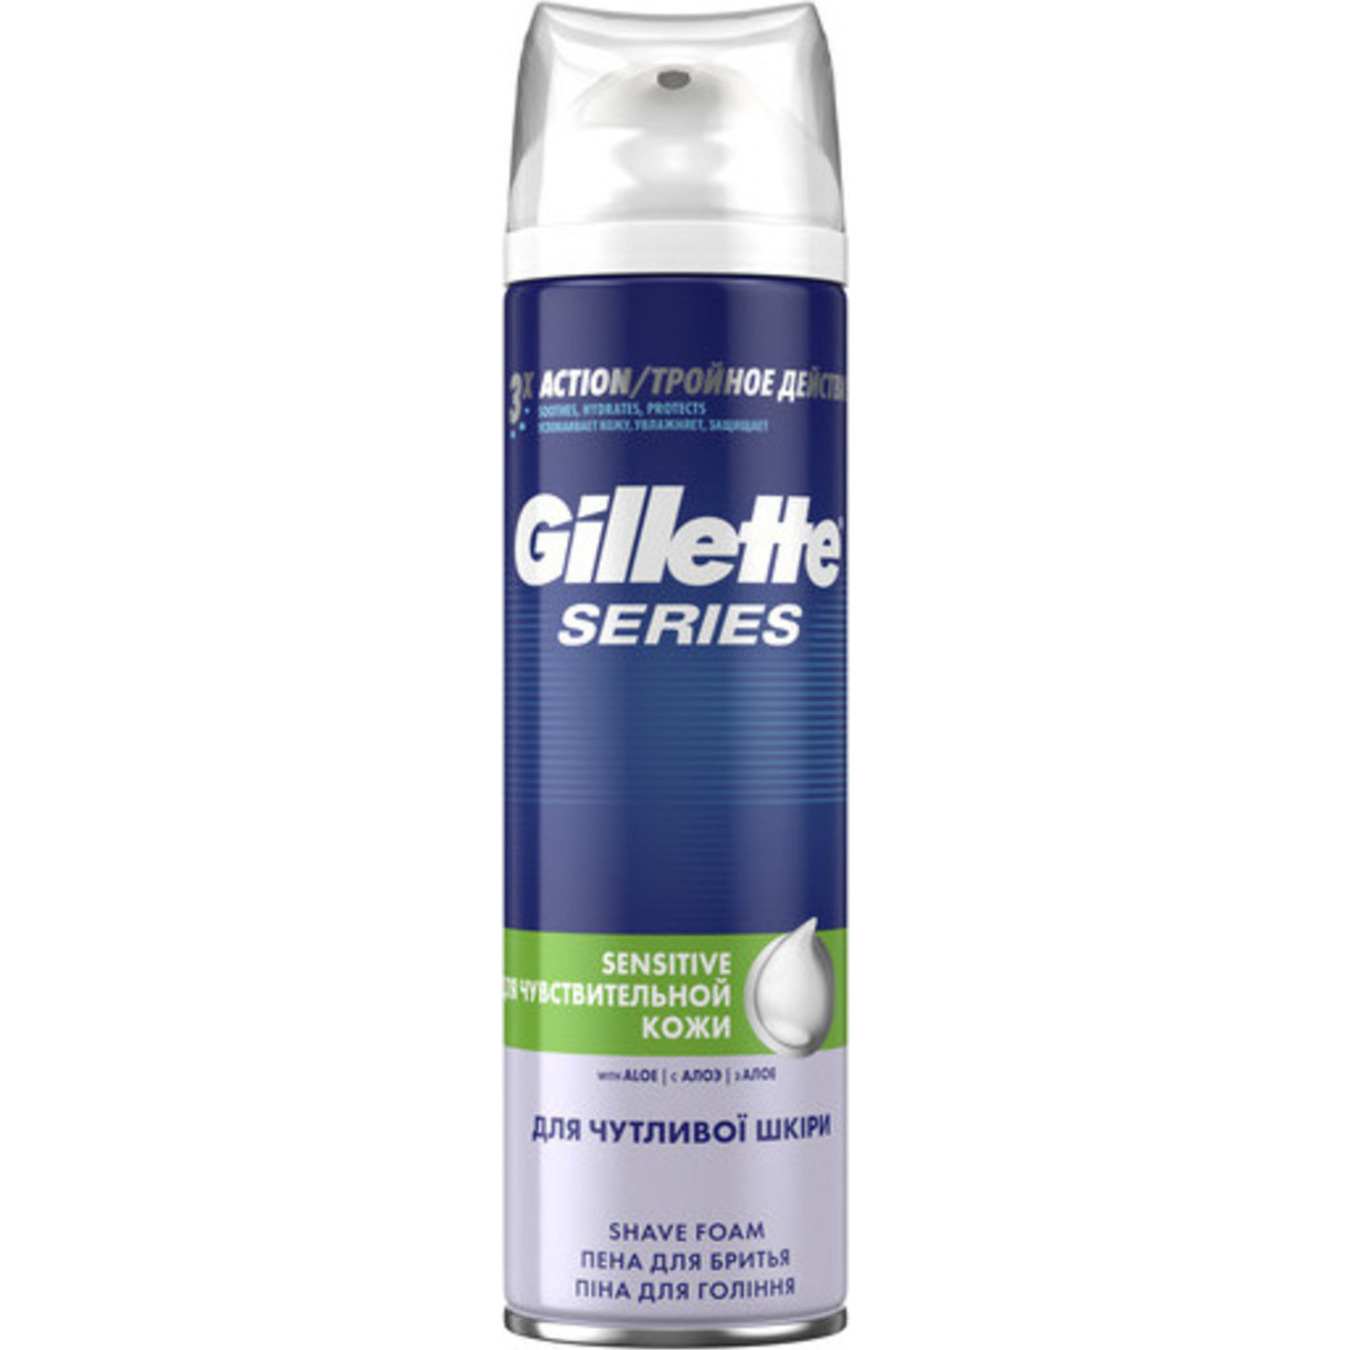 Gillette shaving foam for sensitive skin 250 ml